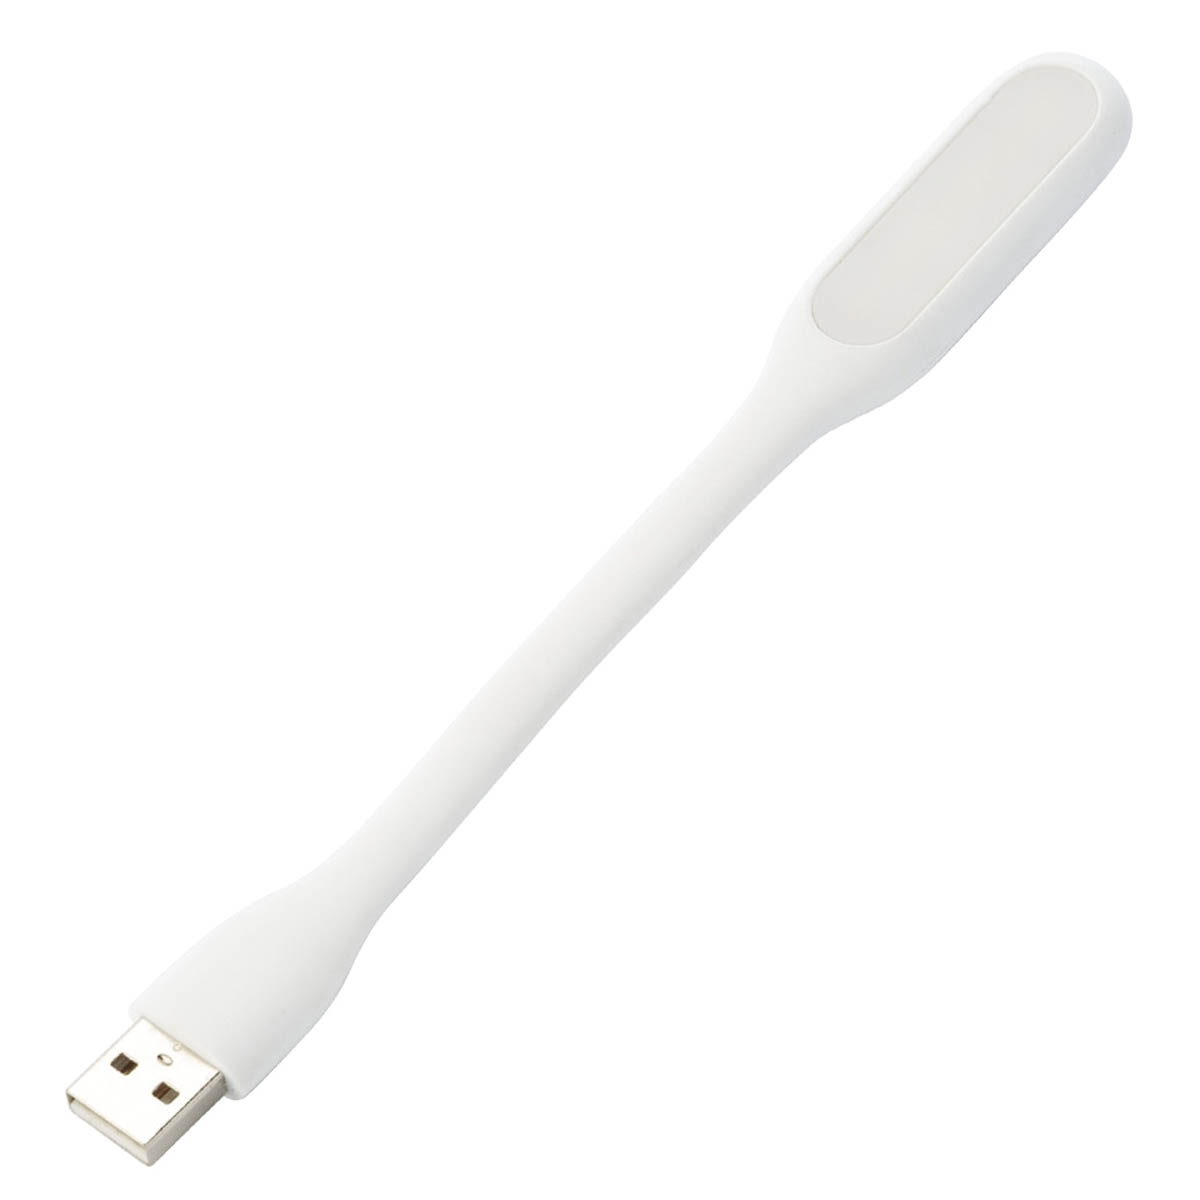 LED USB светильник, 6 диодов, длина 16.5 см, цвет белый